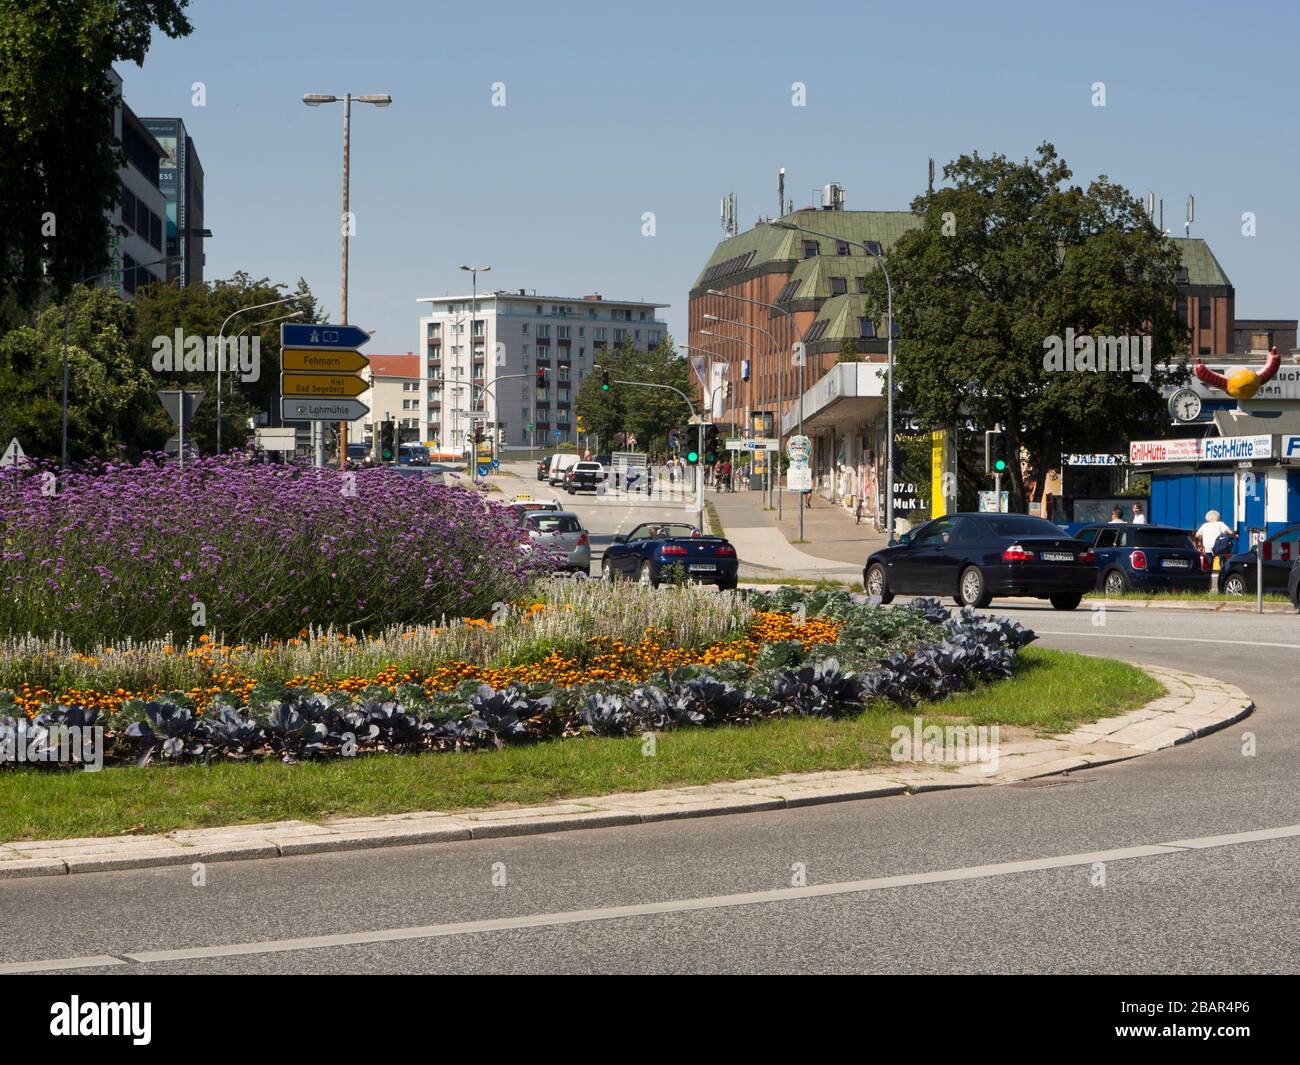 Alla rotonda Lindenplatz di Lübeck Germania, il traffico si combina con piante e fiori bellissimi Foto Stock